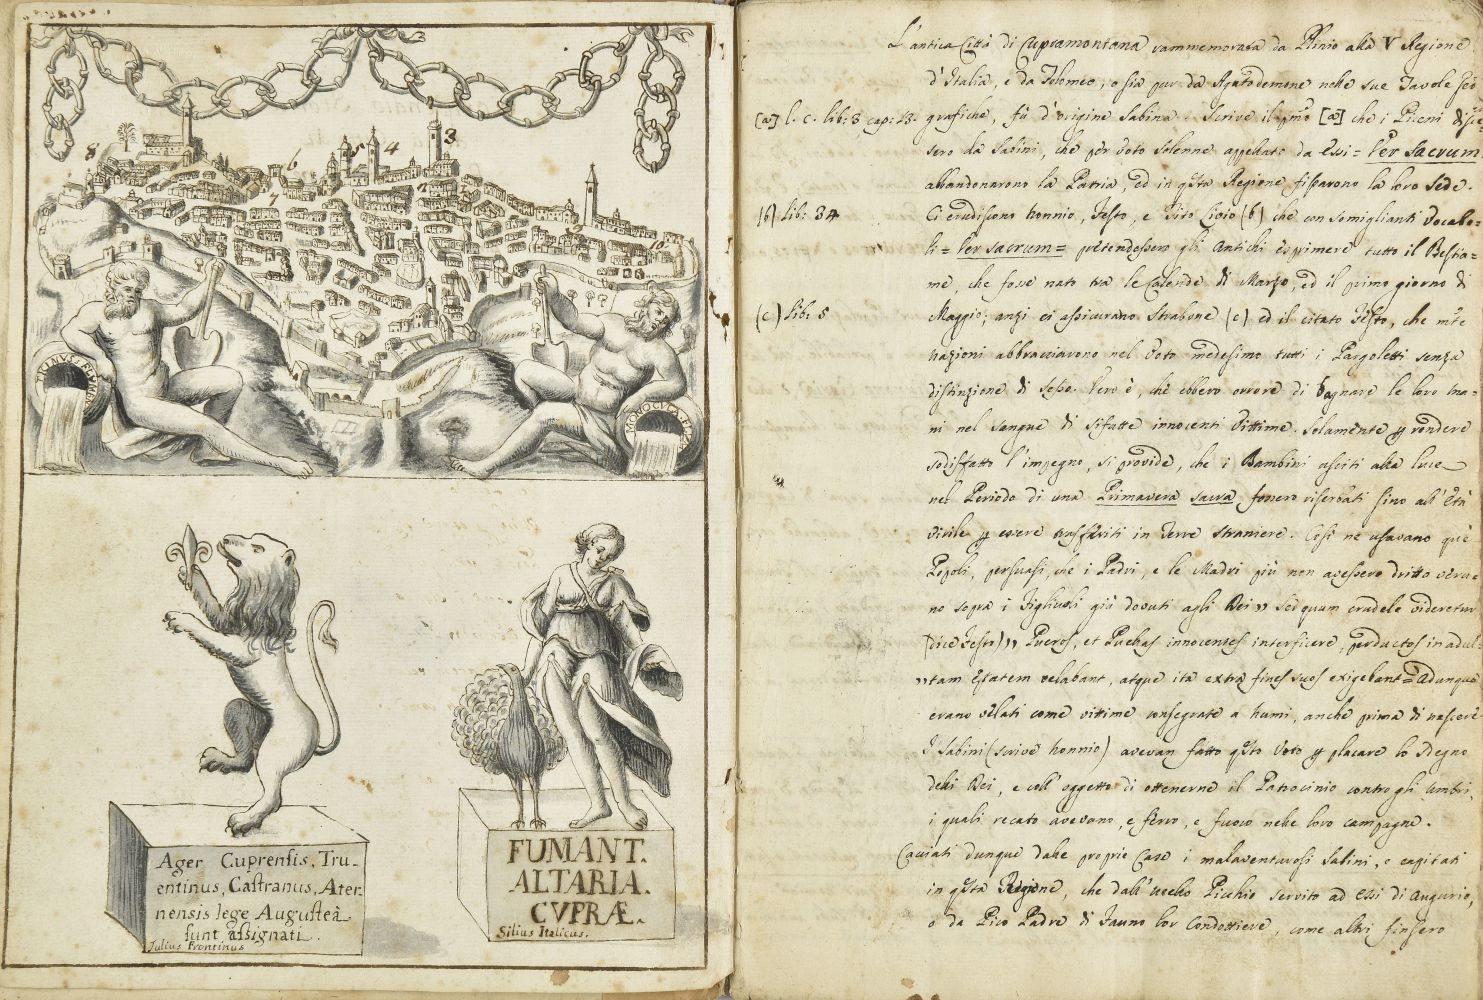 Tanursi (Francesco Maria). Compendio storico della citta di Ripatransone, 1769, manuscript